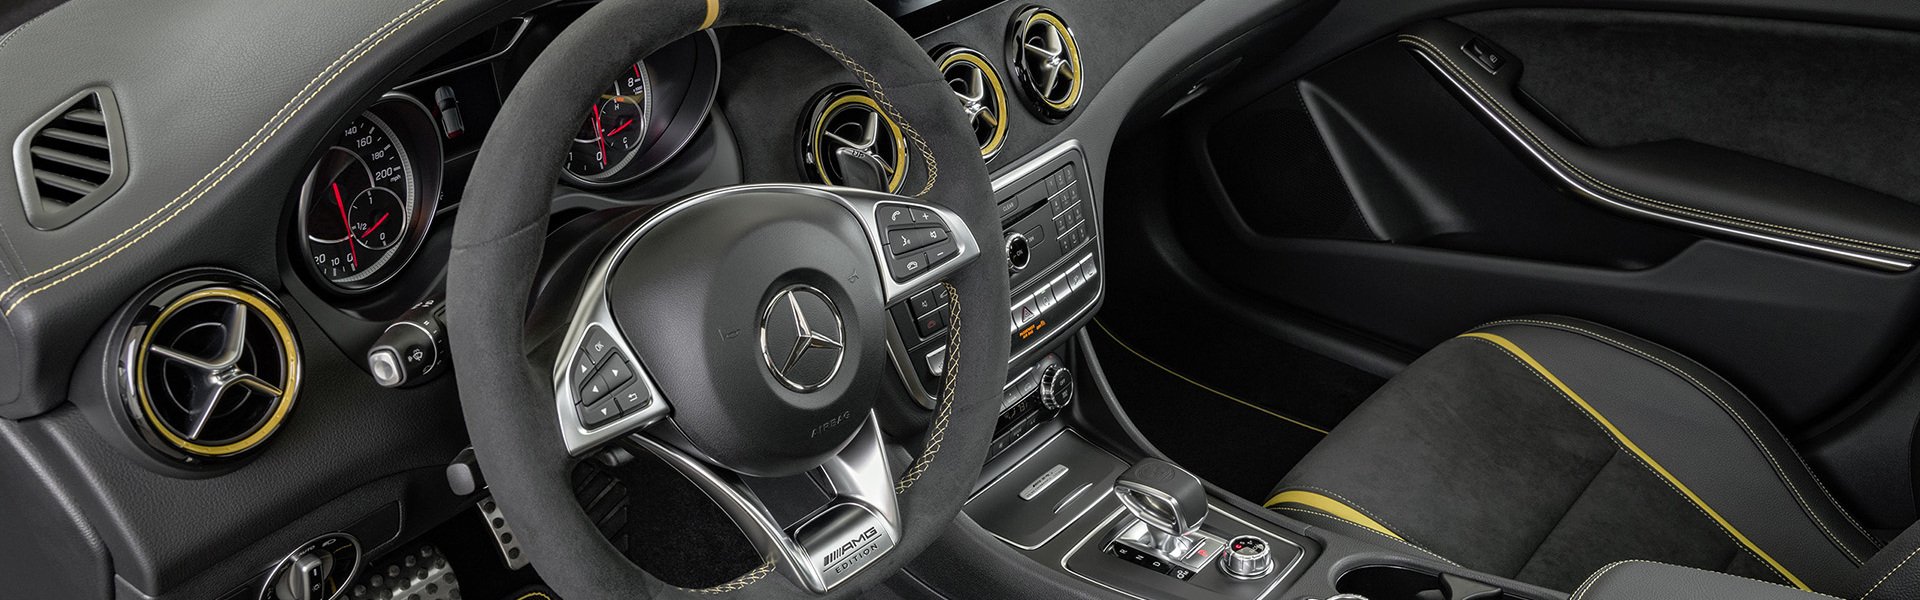 Mercedes-AMG GLA внедорожник